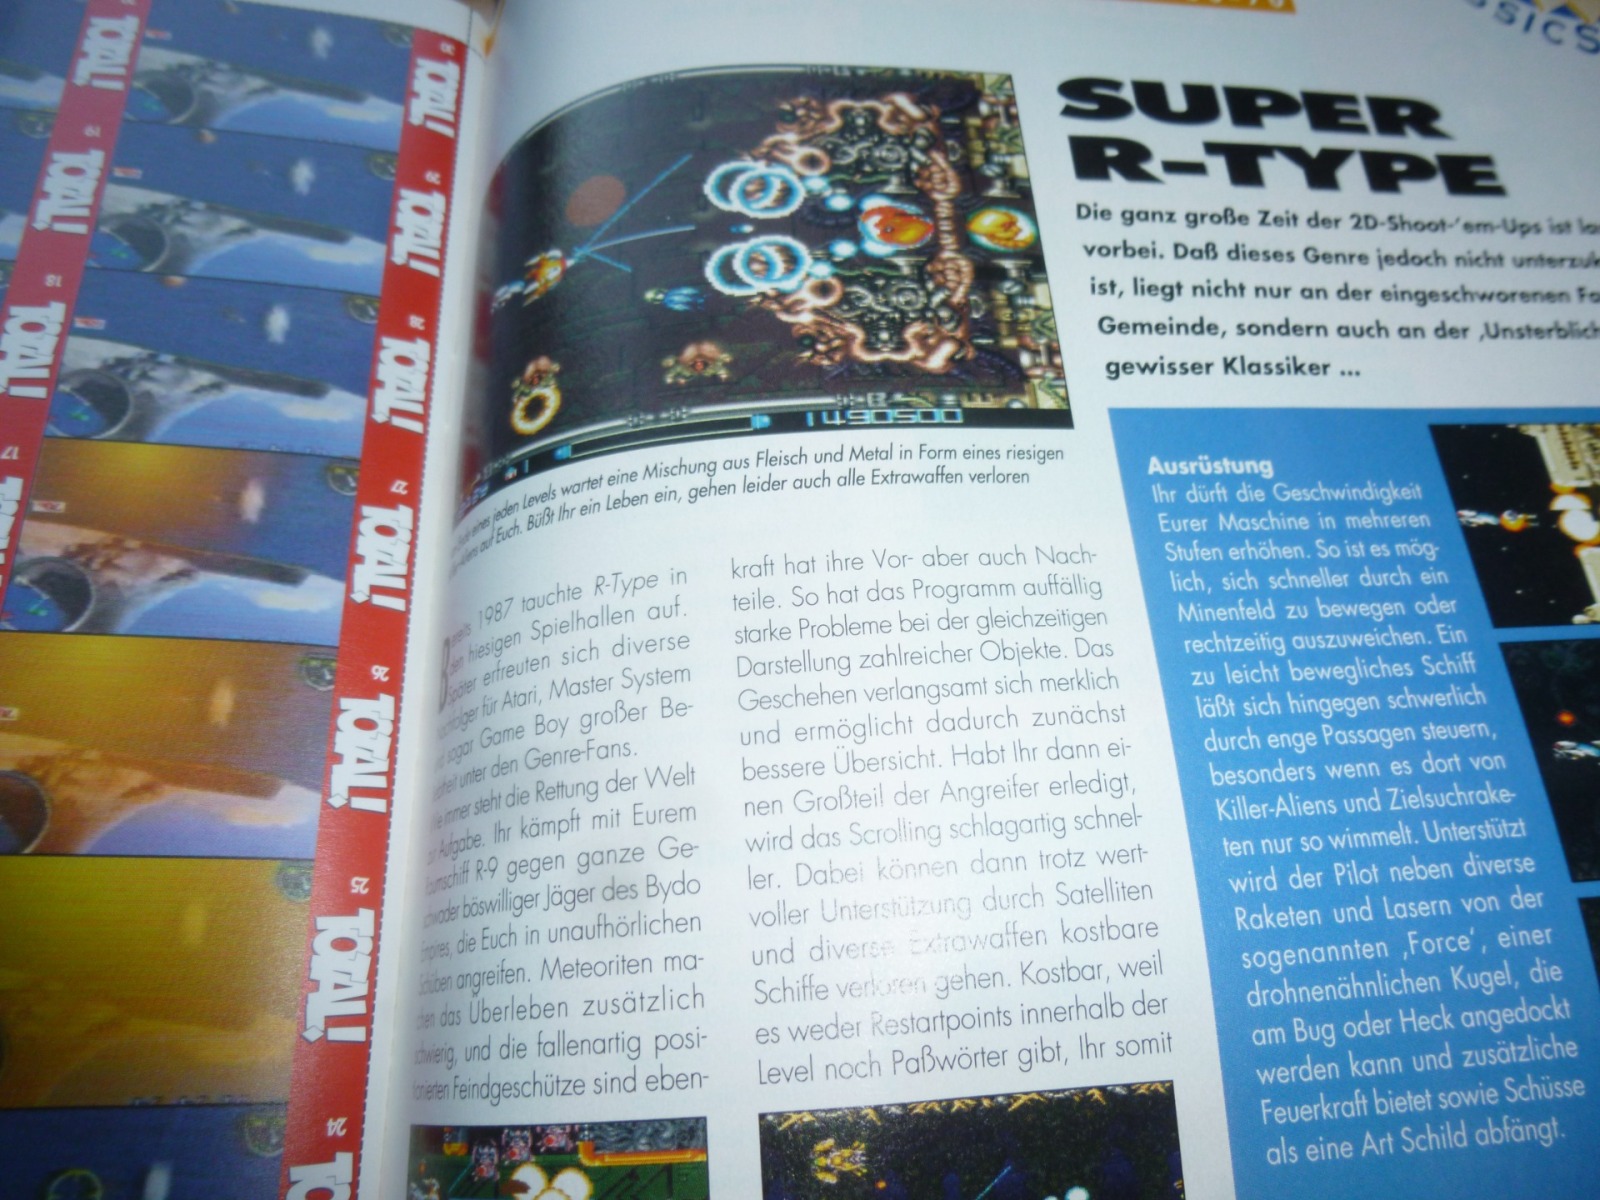 TOTAL Das unabhängige Magazin - 100 Nintendo - Ausgabe 10/96 1996 26